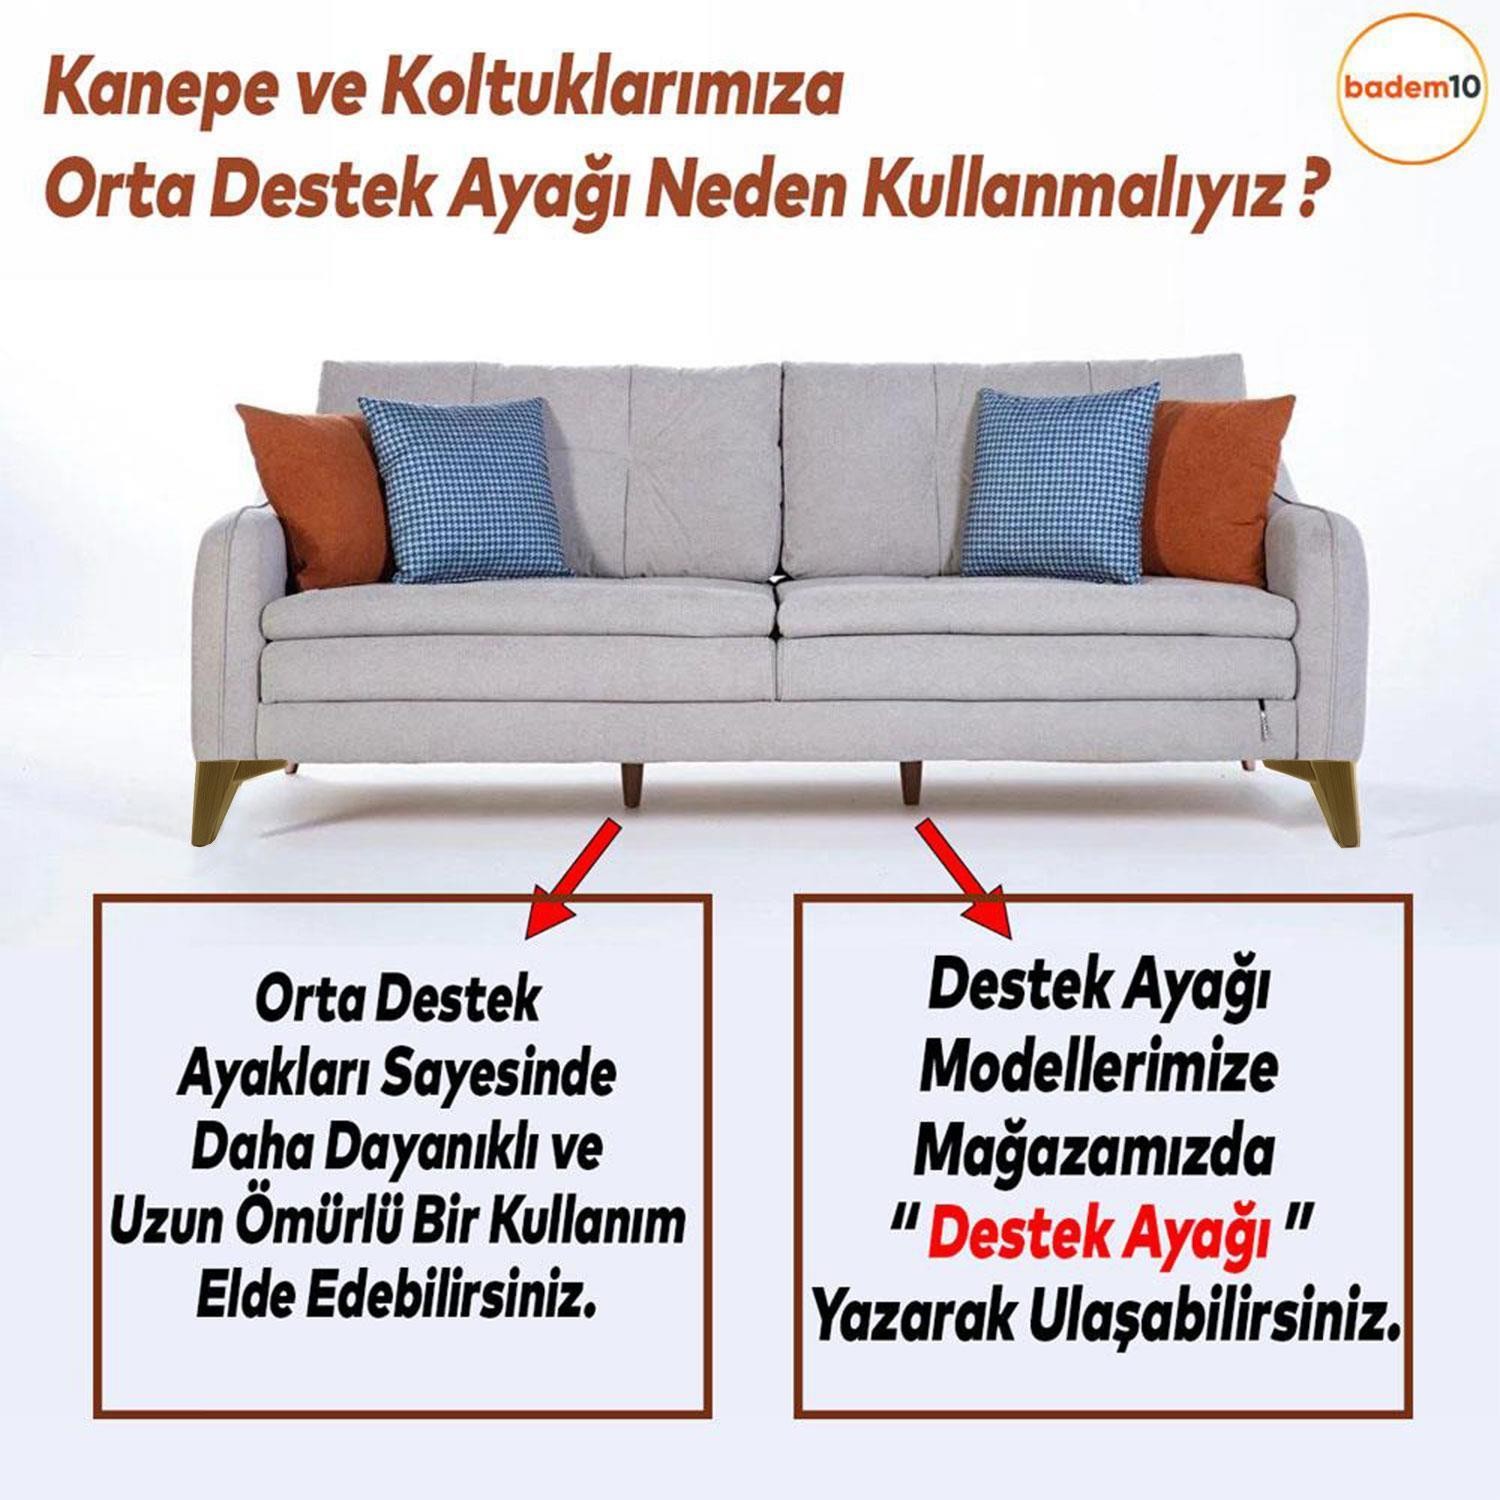 Sedir Lüks Mobilya Kanepe Sehpa Baza TV Ünitesi Koltuk Ayağı Koyu Ceviz 15 cm Ayak (4 ADET)